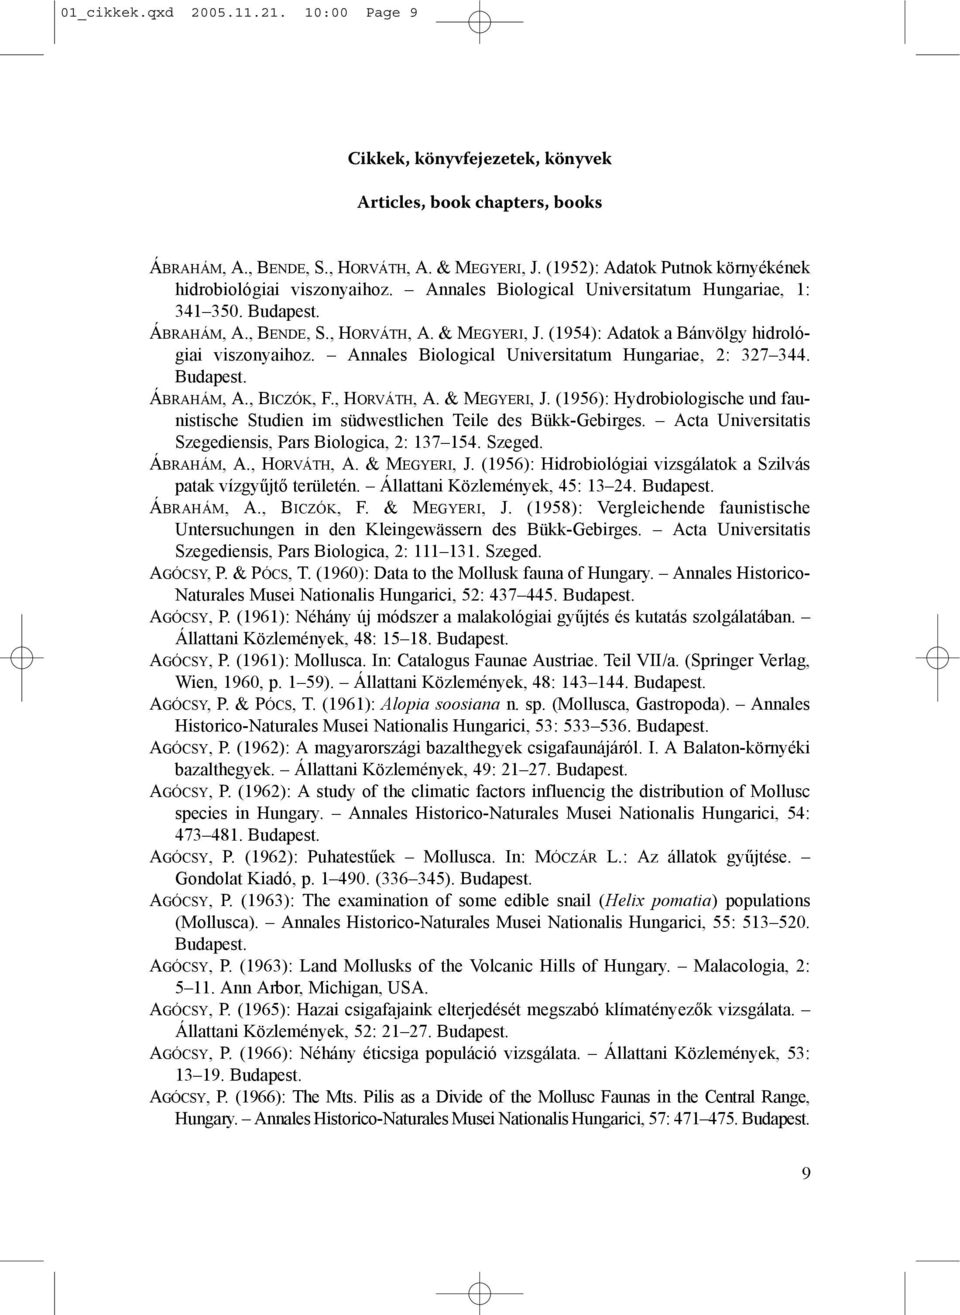 (1954): Adatok a Bánvölgy hidrológiai viszonyaihoz. Annales Biological Universitatum Hungariae, 2: 327 344. ÁBRAHÁM, A., BICZÓK, F., HORVÁTH, A. & MEGYERI, J.